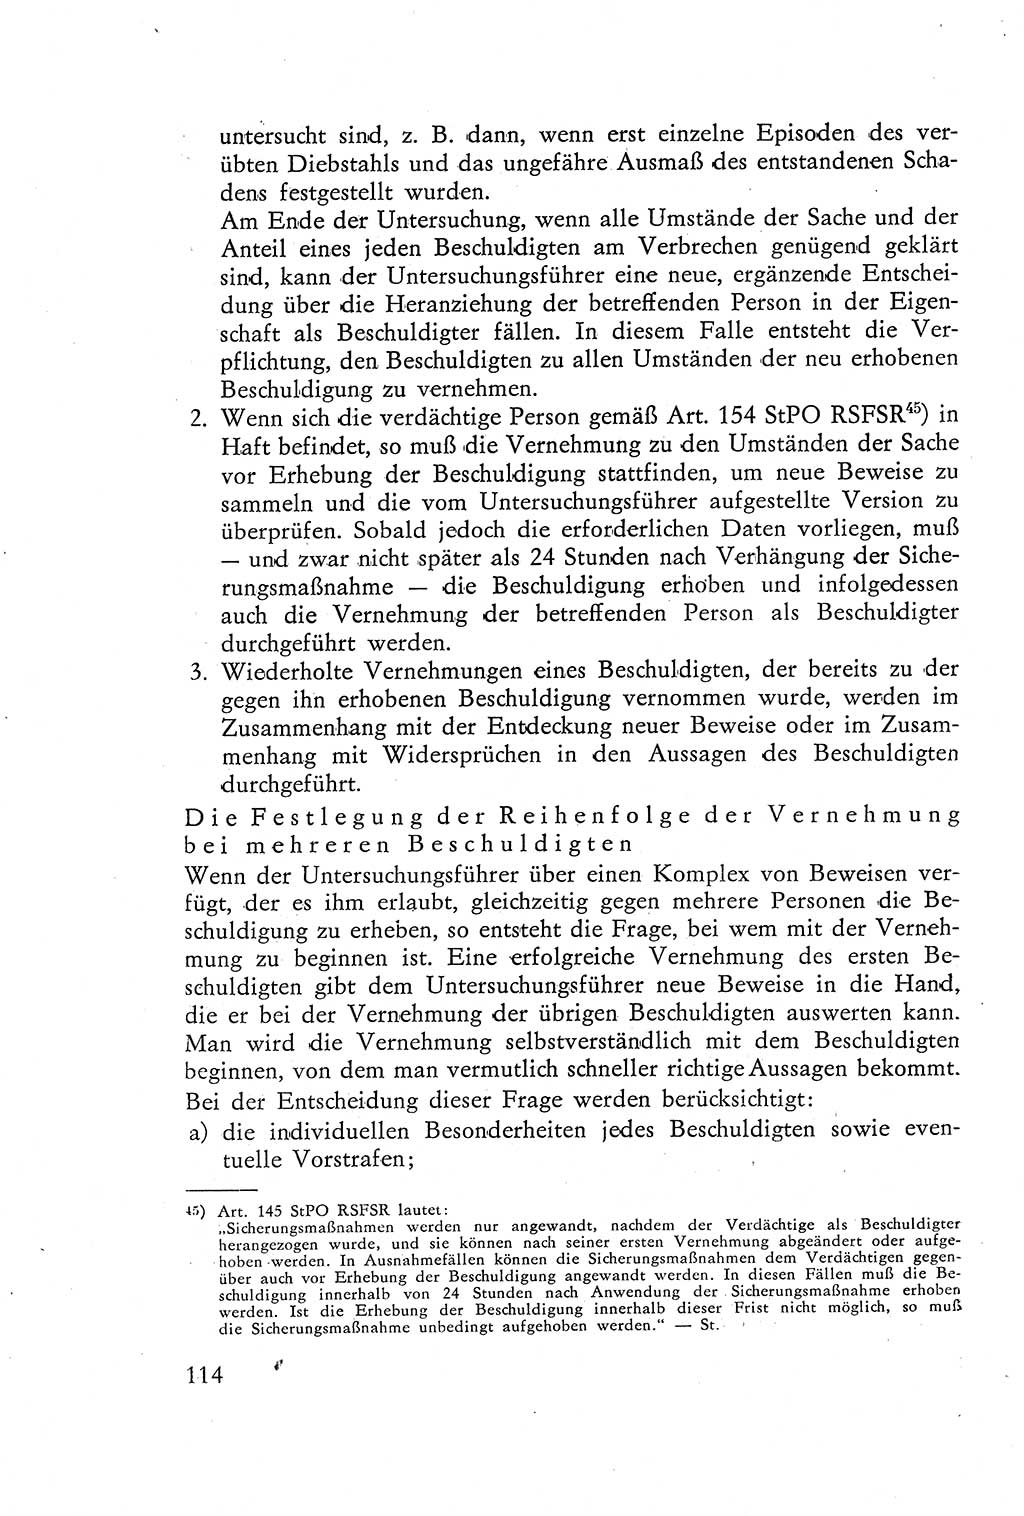 Die Vernehmung [Deutsche Demokratische Republik (DDR)] 1960, Seite 114 (Vern. DDR 1960, S. 114)